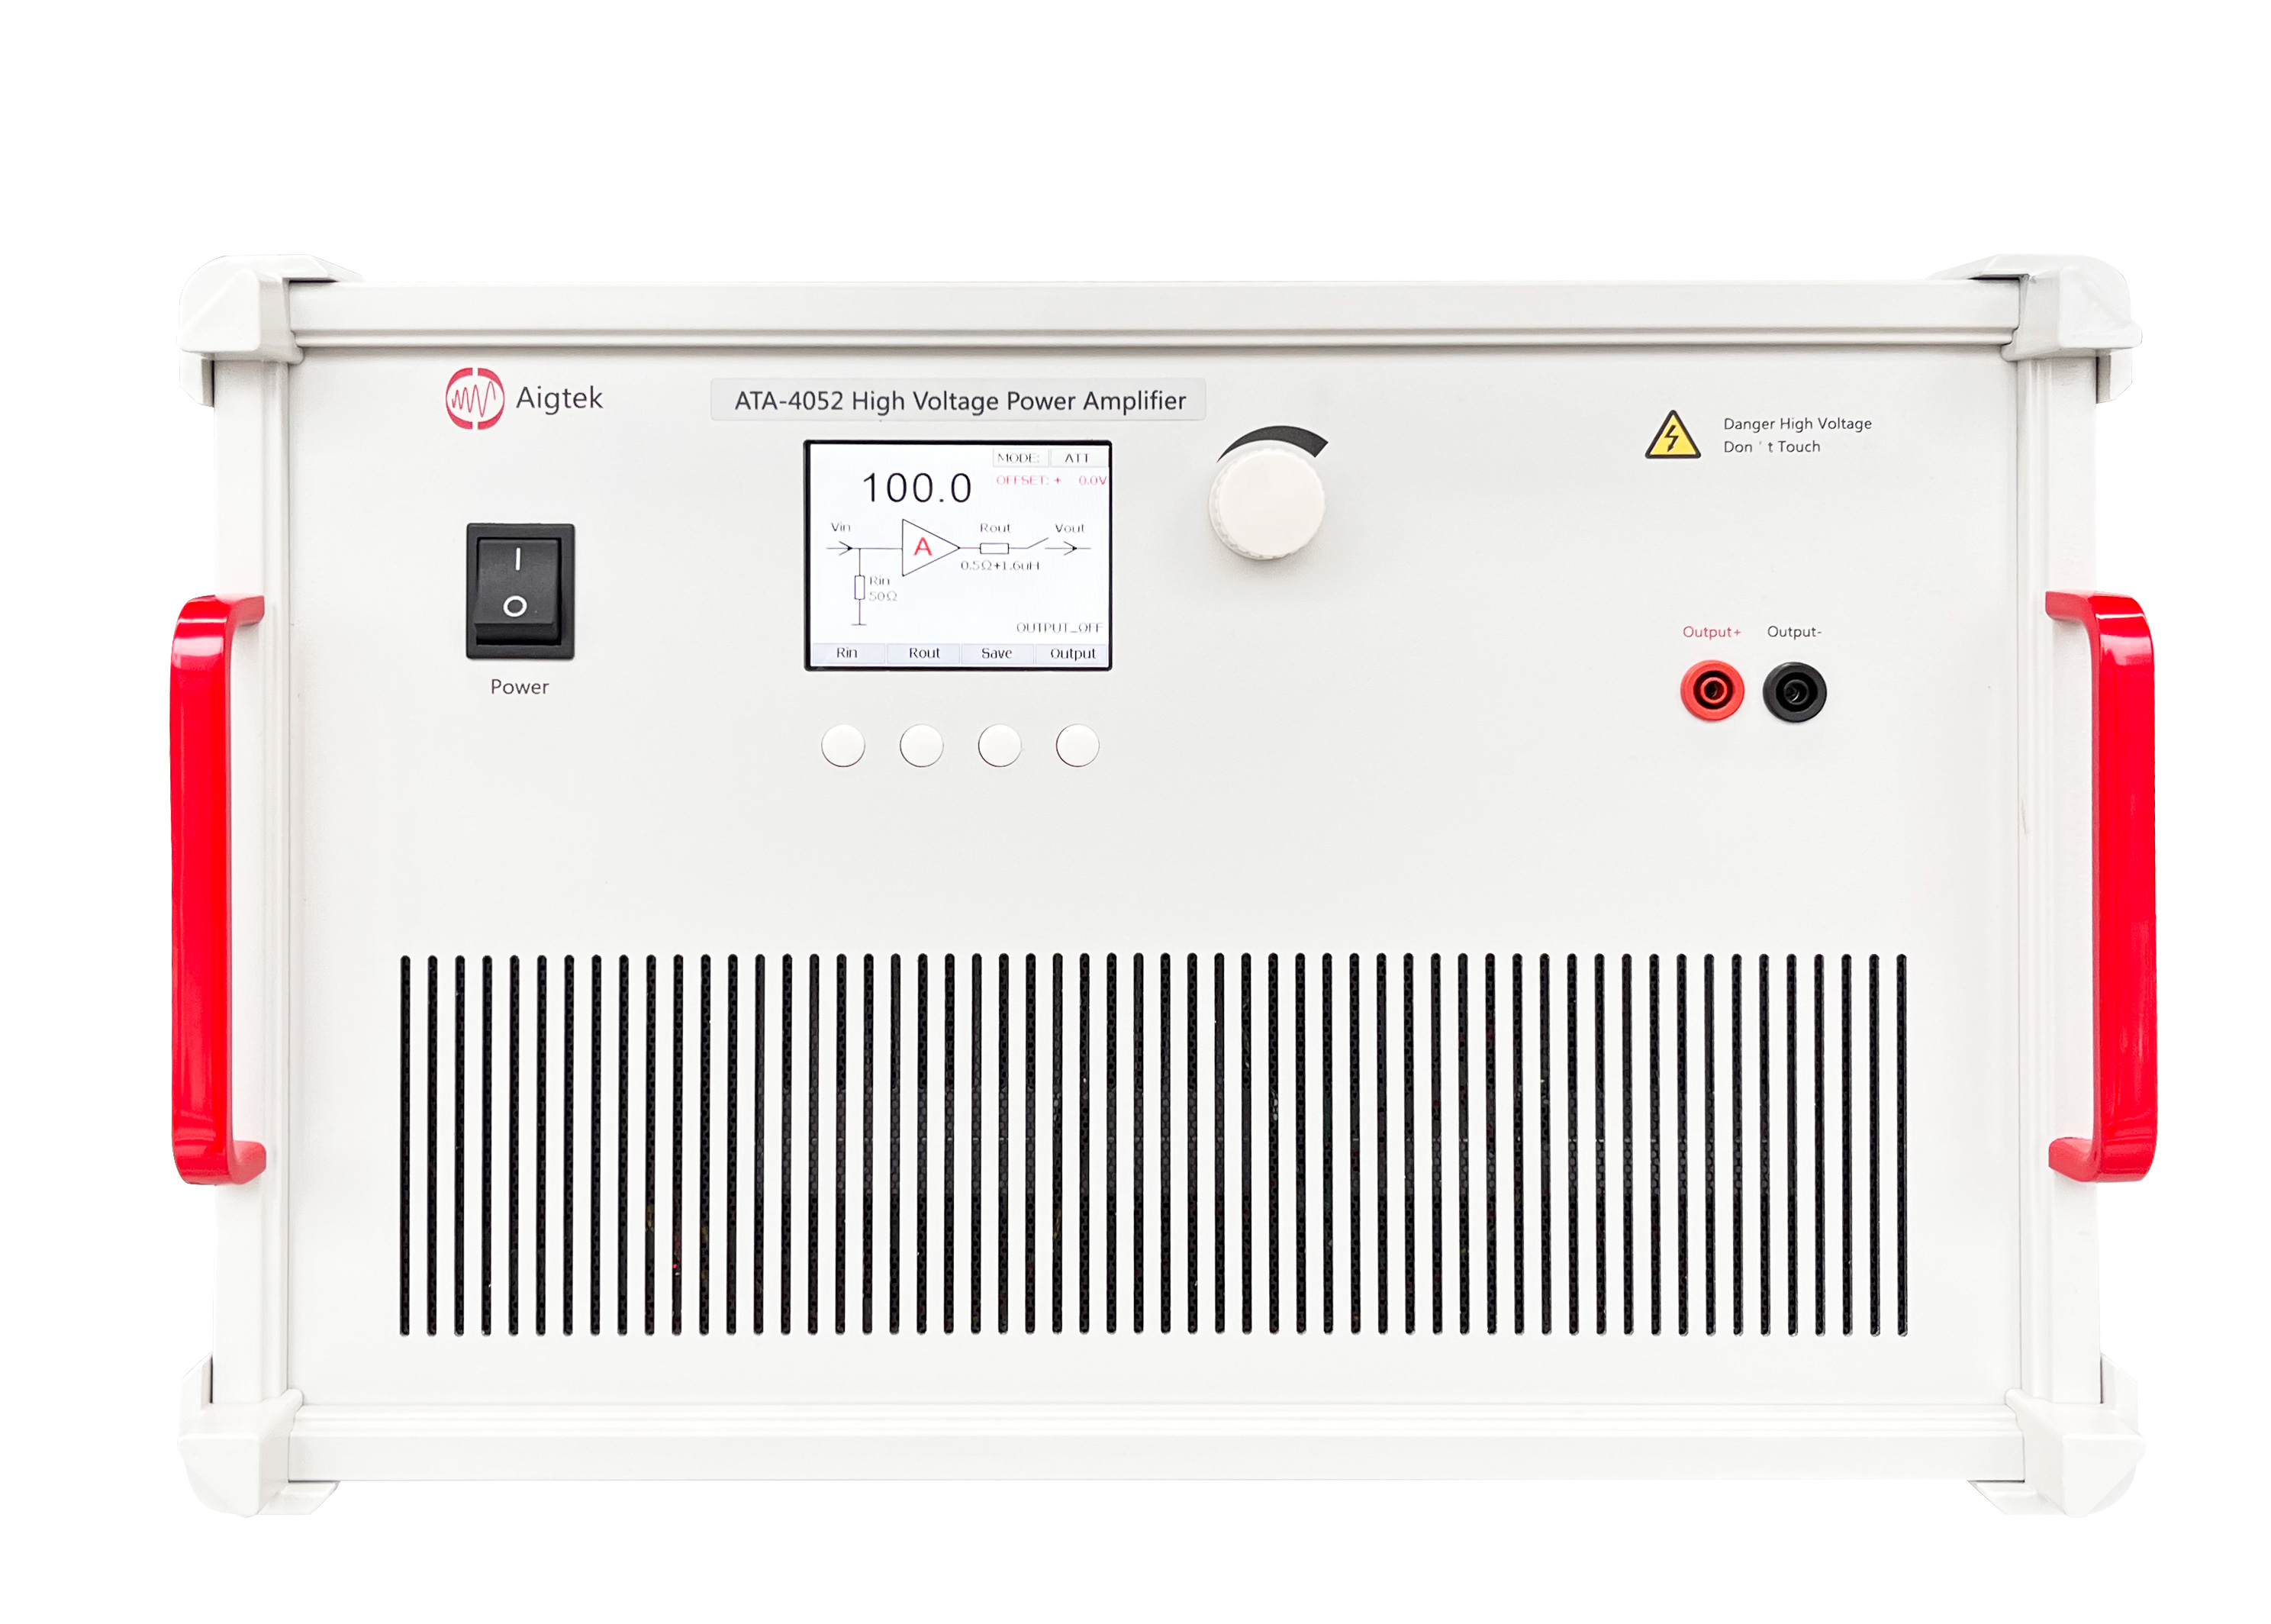 High Voltage Power Amplifier ATA-4052